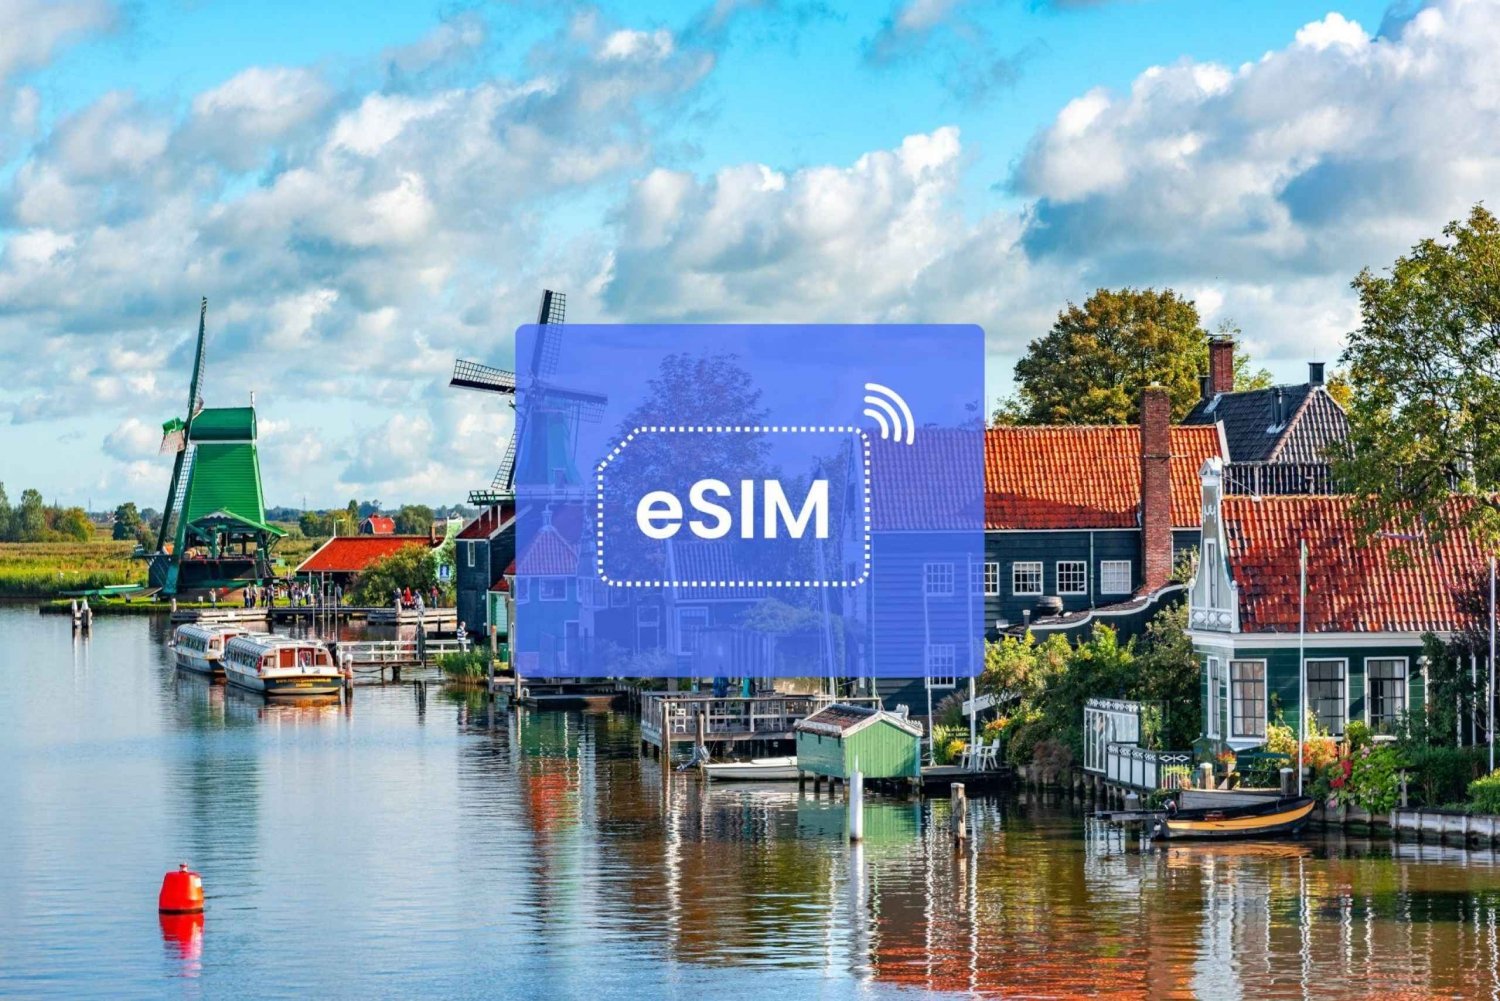 Amsterdam: Nederland/Europa eSIM Roaming Mobile Data Plan